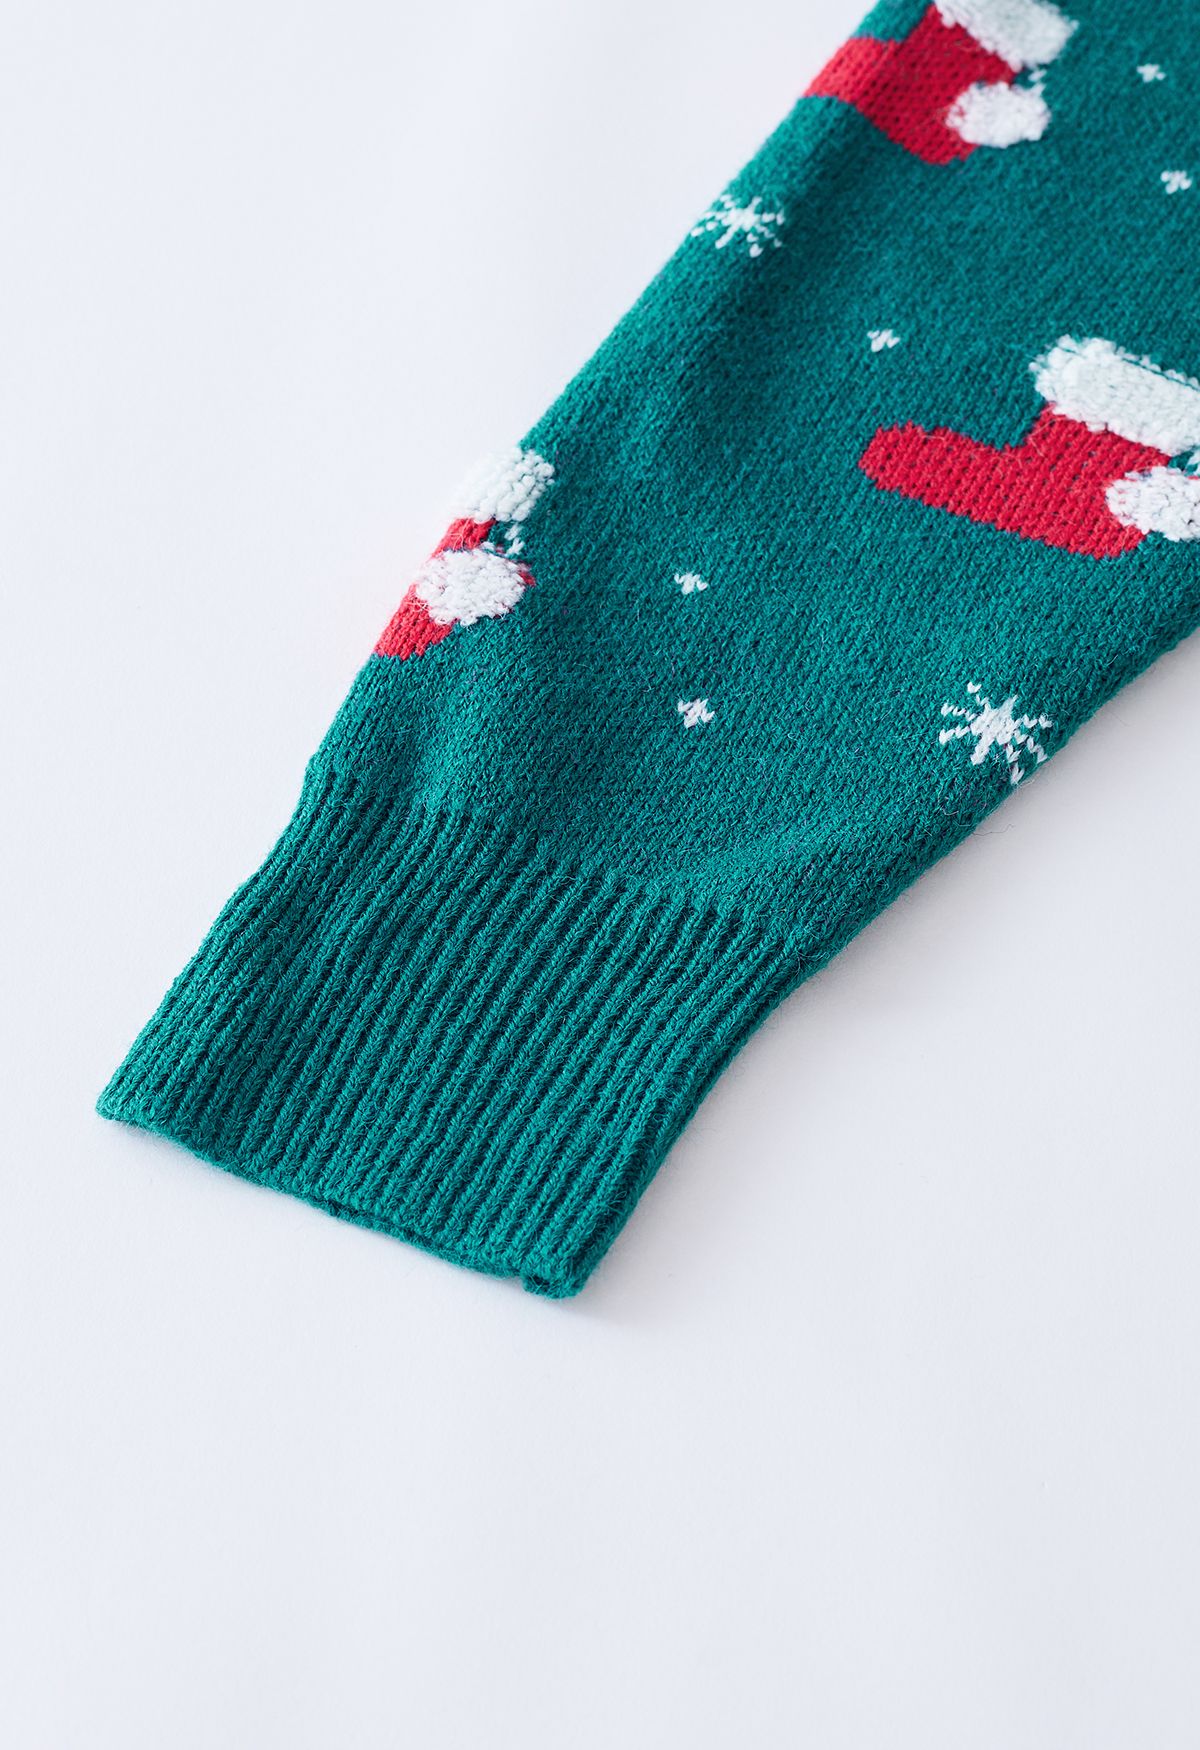 Maglione lavorato a maglia con fiocco di neve della calza di Natale